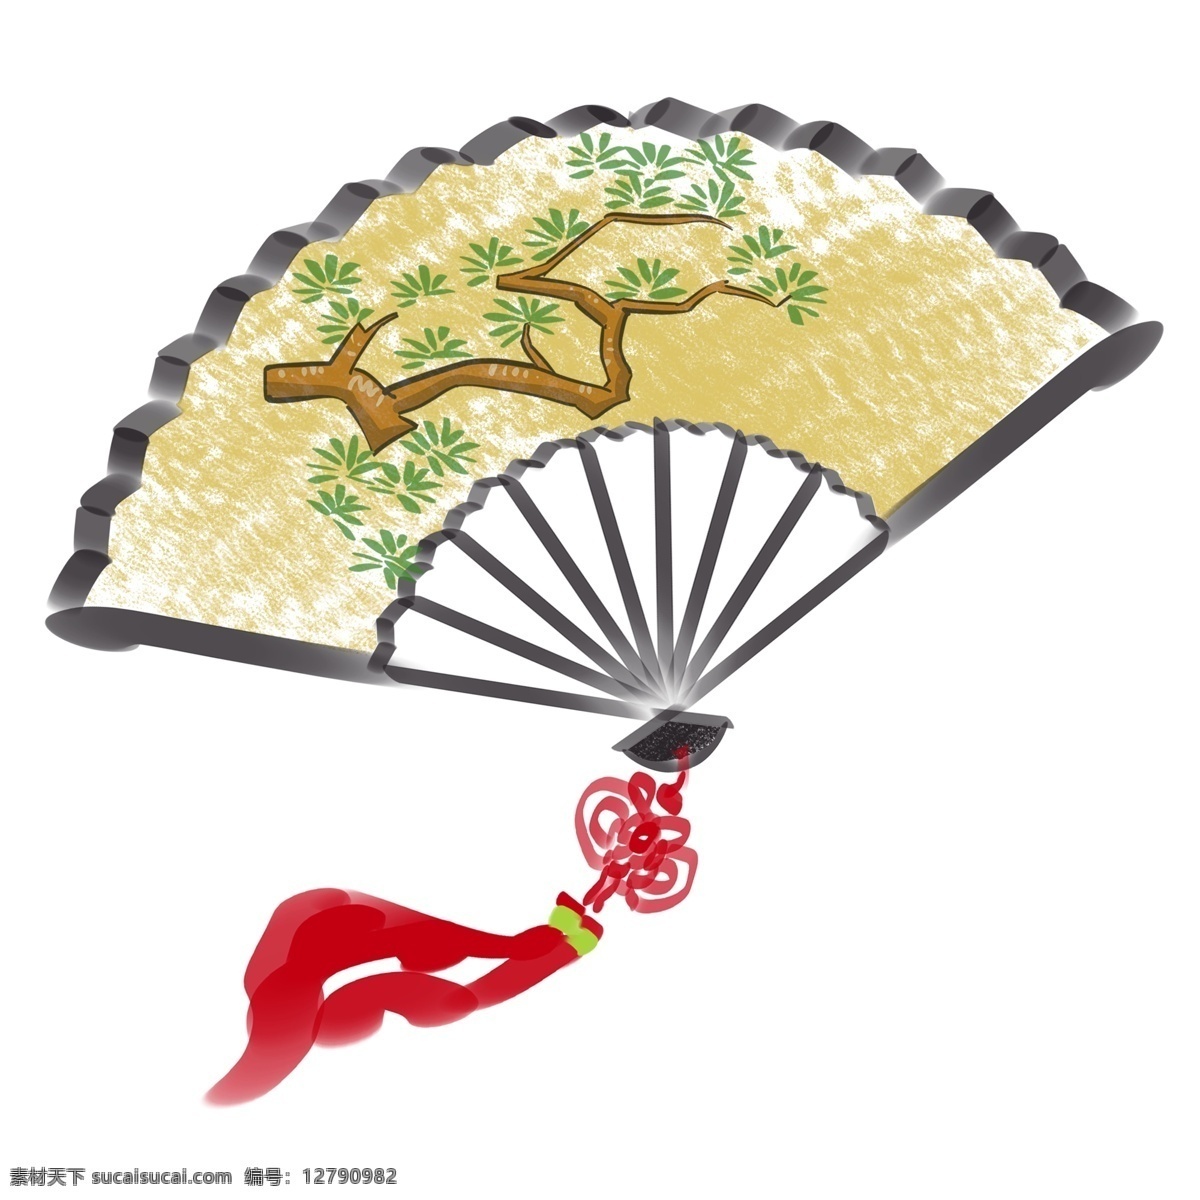 水墨 流苏 古典 折扇 水墨扇子 中国风 红色流苏 绿树扇面 手折扇 古风执扇 中国文化 文化艺术